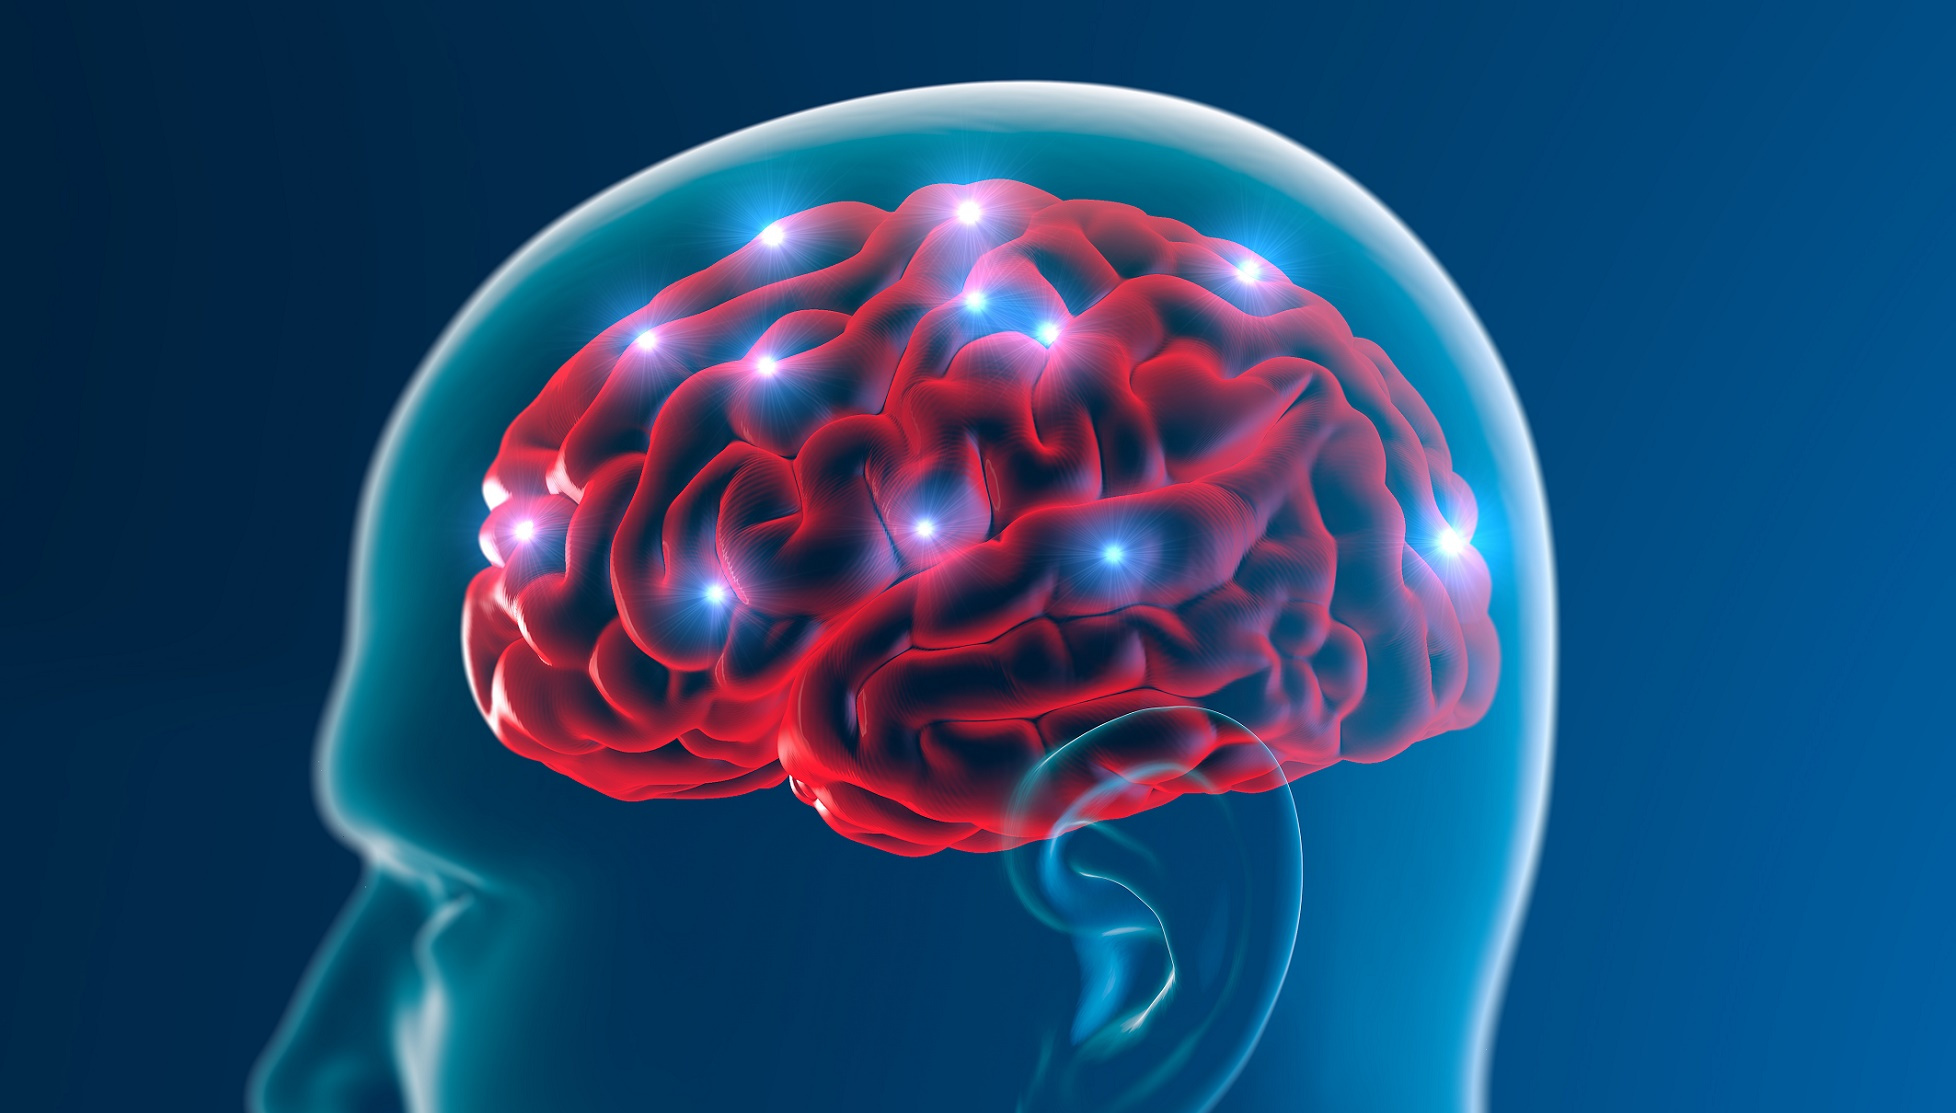 La maladie d’Alzheimer se caractérise à la fois par des plaques amyloïdes et l’accumulation de protéines Tau dans le cerveau. © Naeblys, Shutterstock